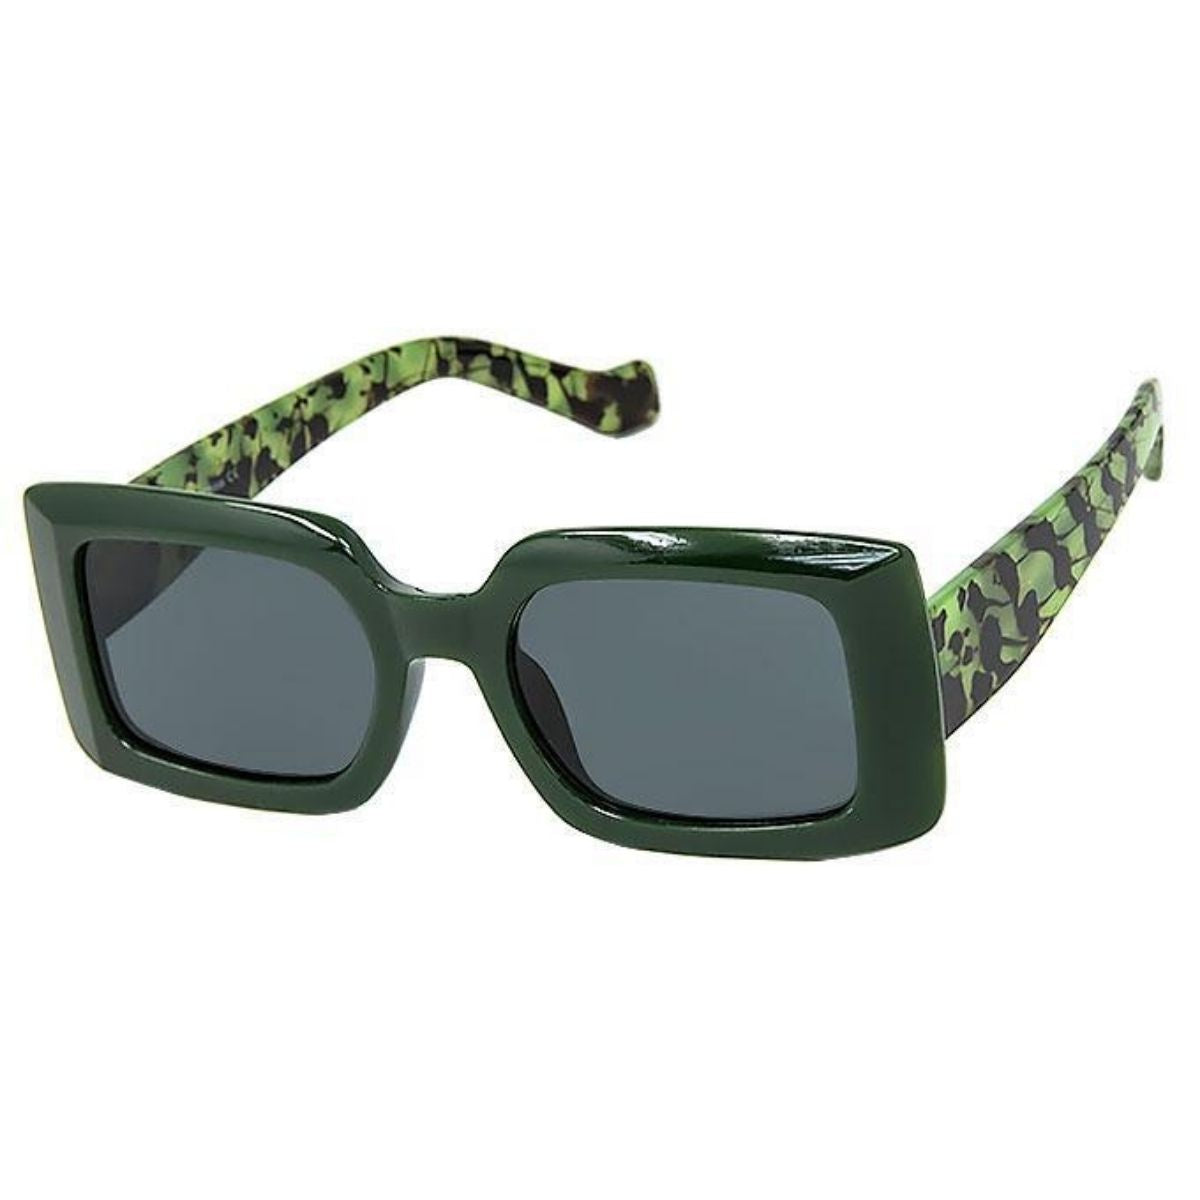 Green Rectangle Ink Splatter Sunglasses